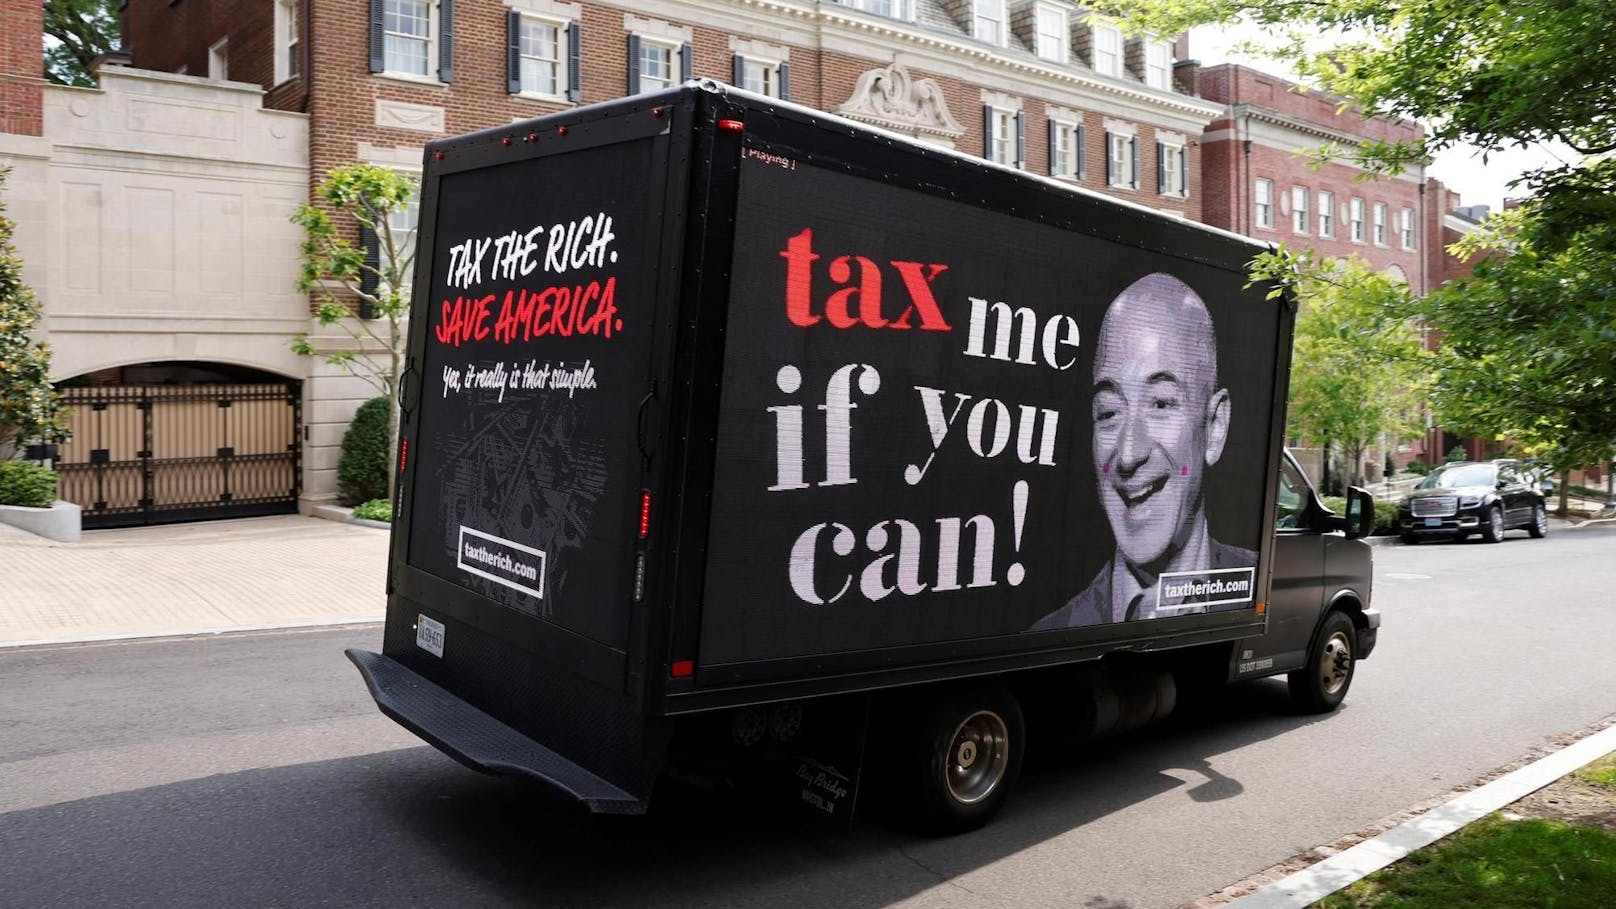 Zwischen 2007 und 2011 hat Jeff Bezos keine Einkommenssteuern bezahlt. Das hat ein Leak von Steuerdaten gezeigt.